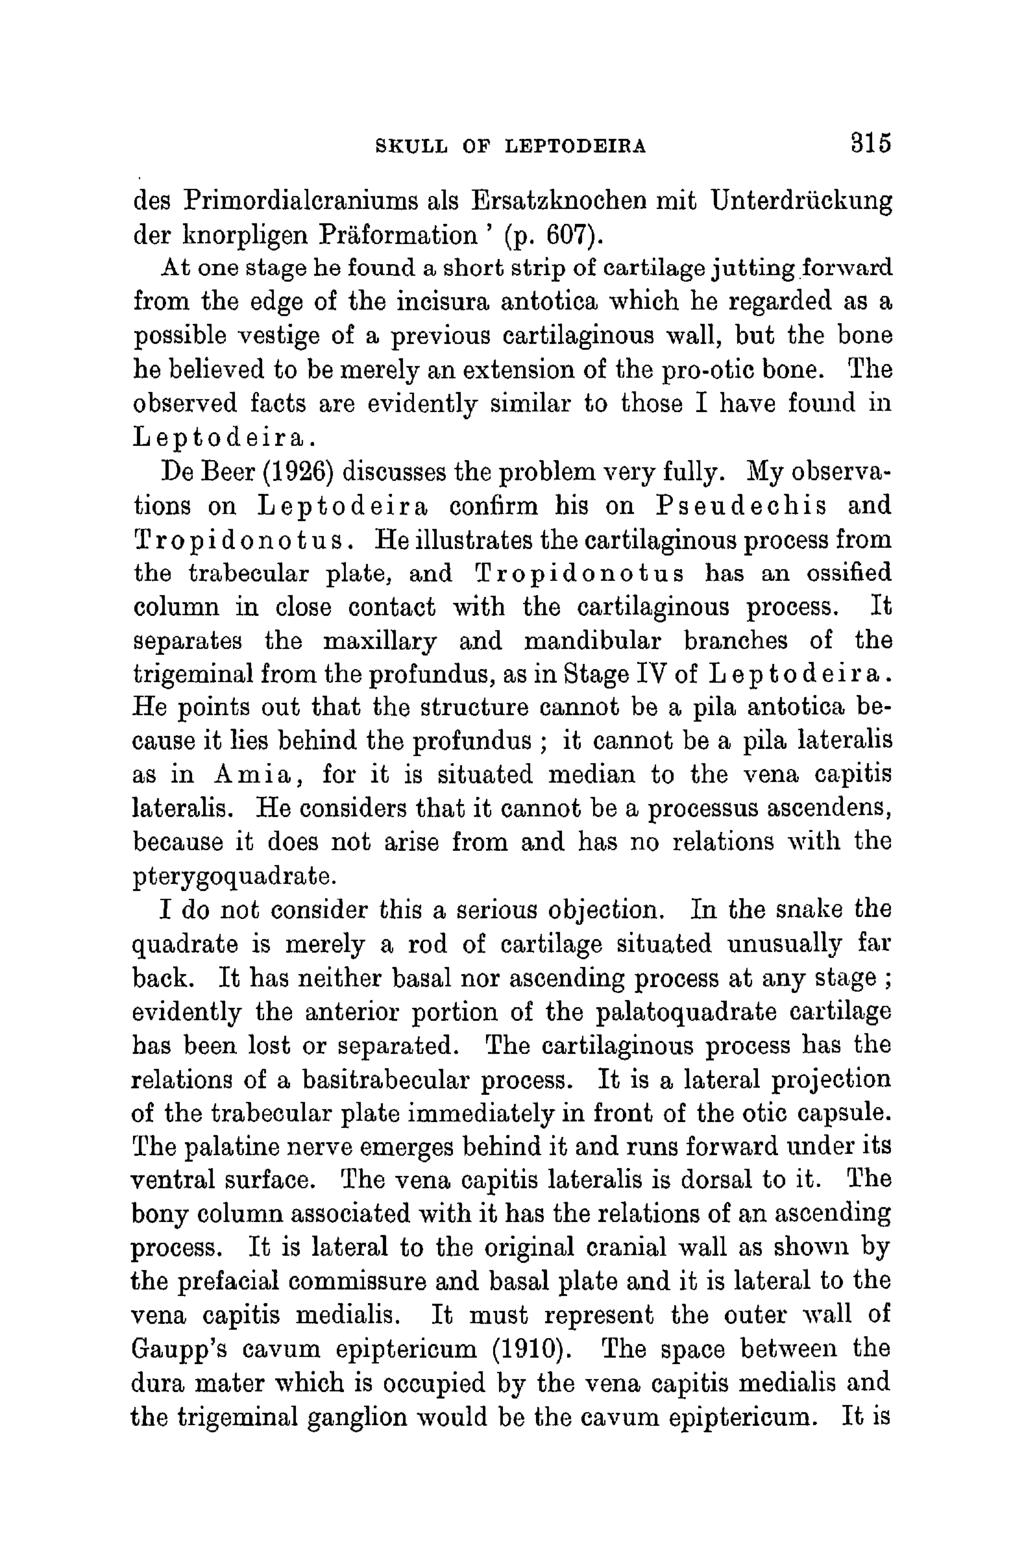 SKULL OF LEPTODEIRA 315 des Primordialcraniums als Ersatzknochen mit Unterdruckung der knorpligen Praformation ' (p. 607).